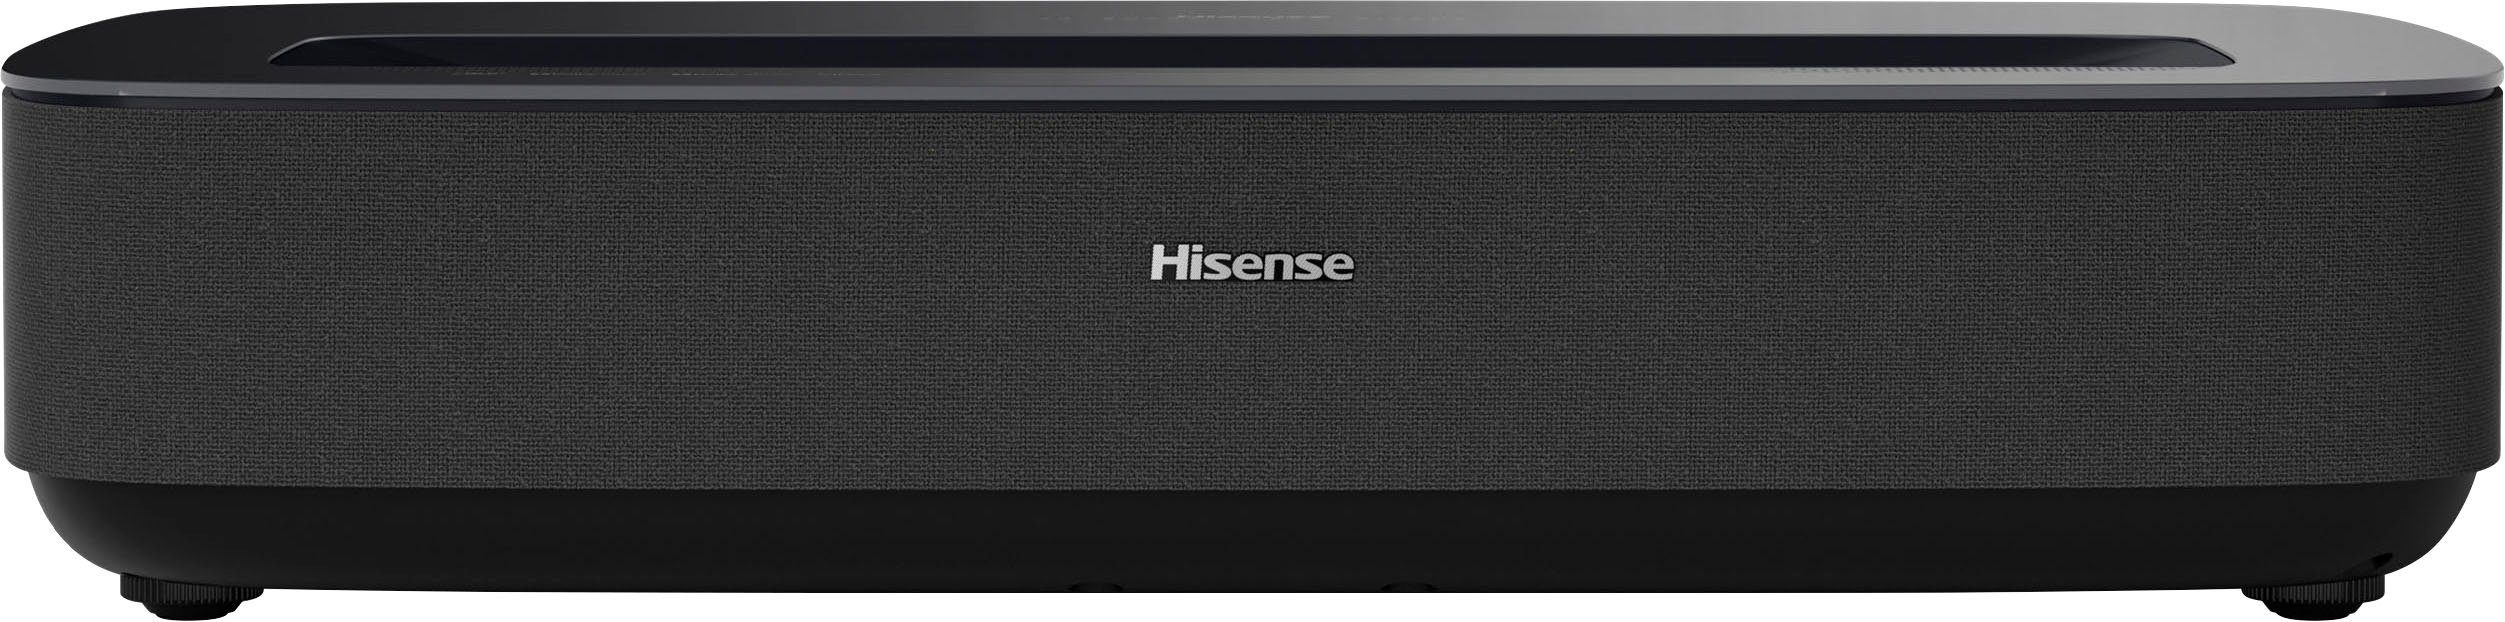 Hisense PL1SE Beamer (2100 lm, 3840 x 2160 px)